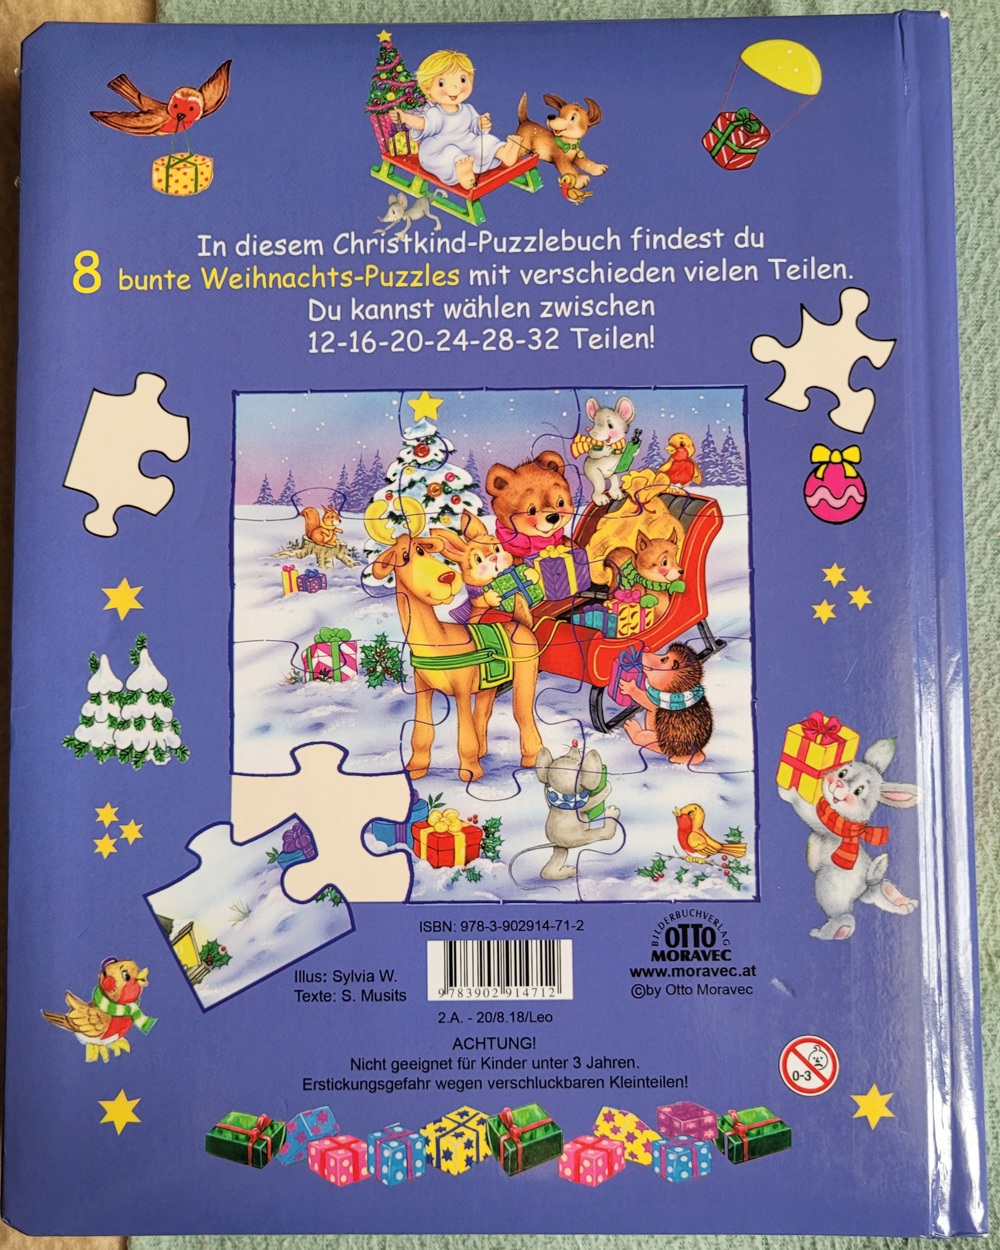 Mein allerliebsten Weihnachts-Puzzlebuch